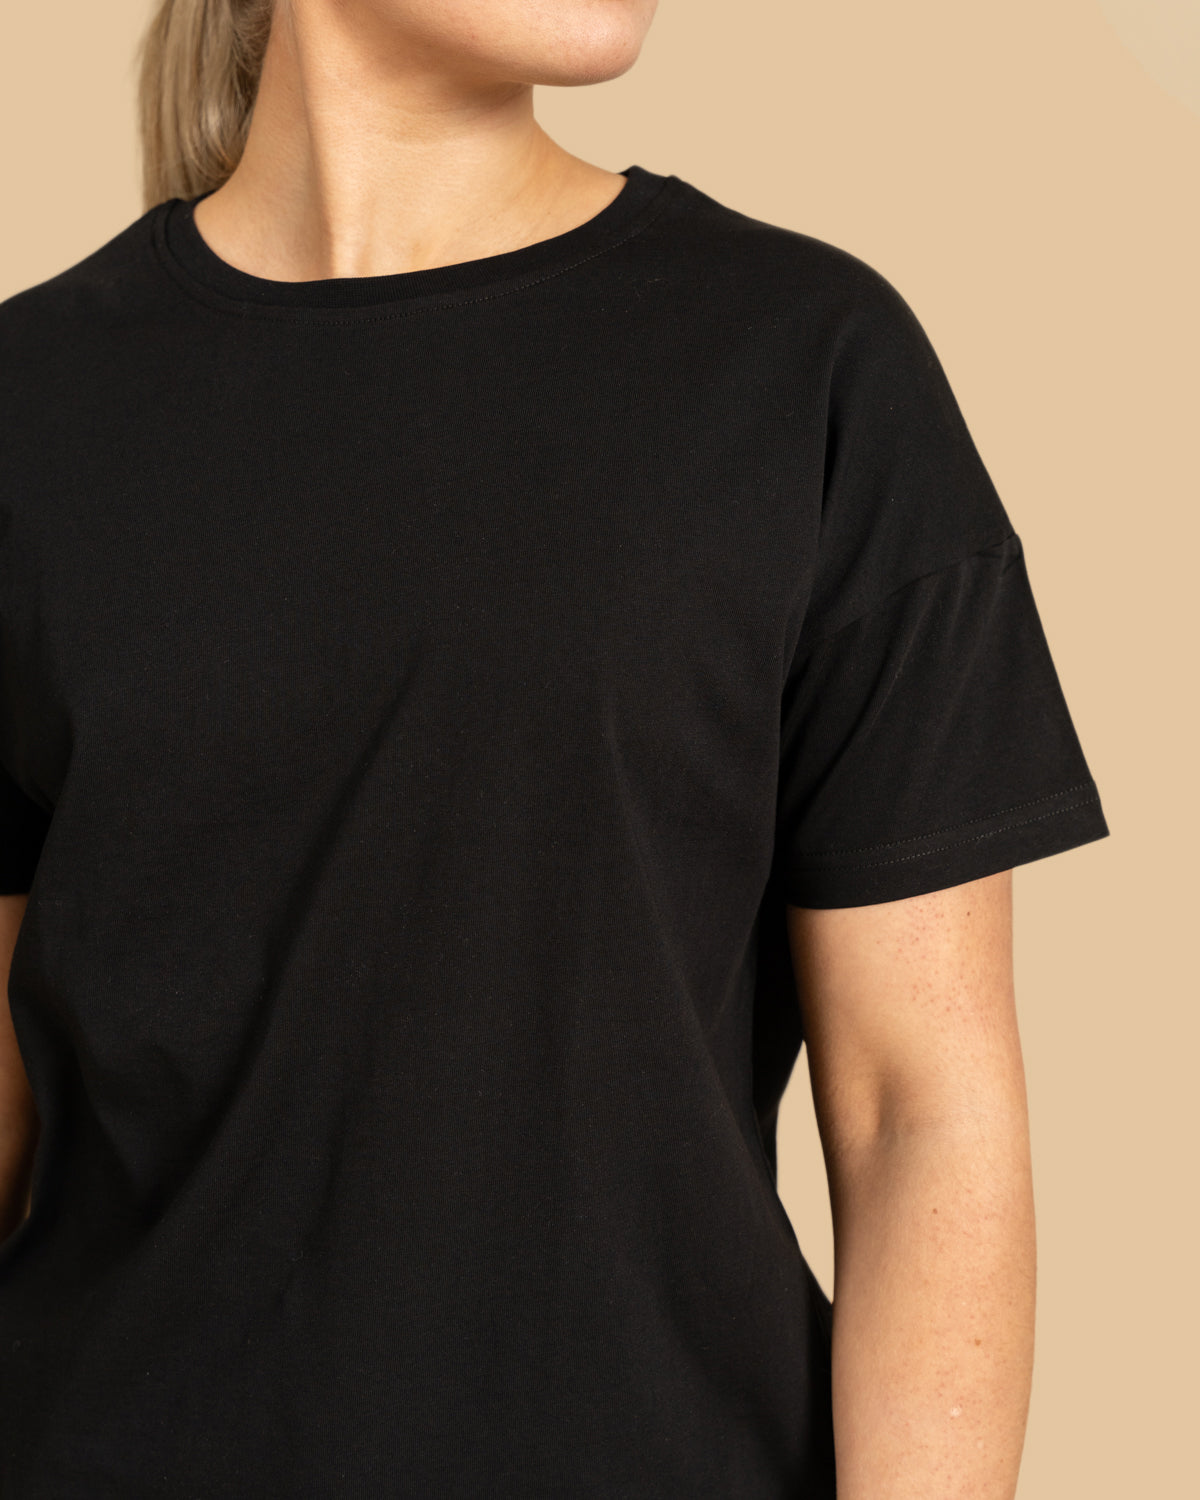 Musta t-paita normaali helma RIVA Clothing.